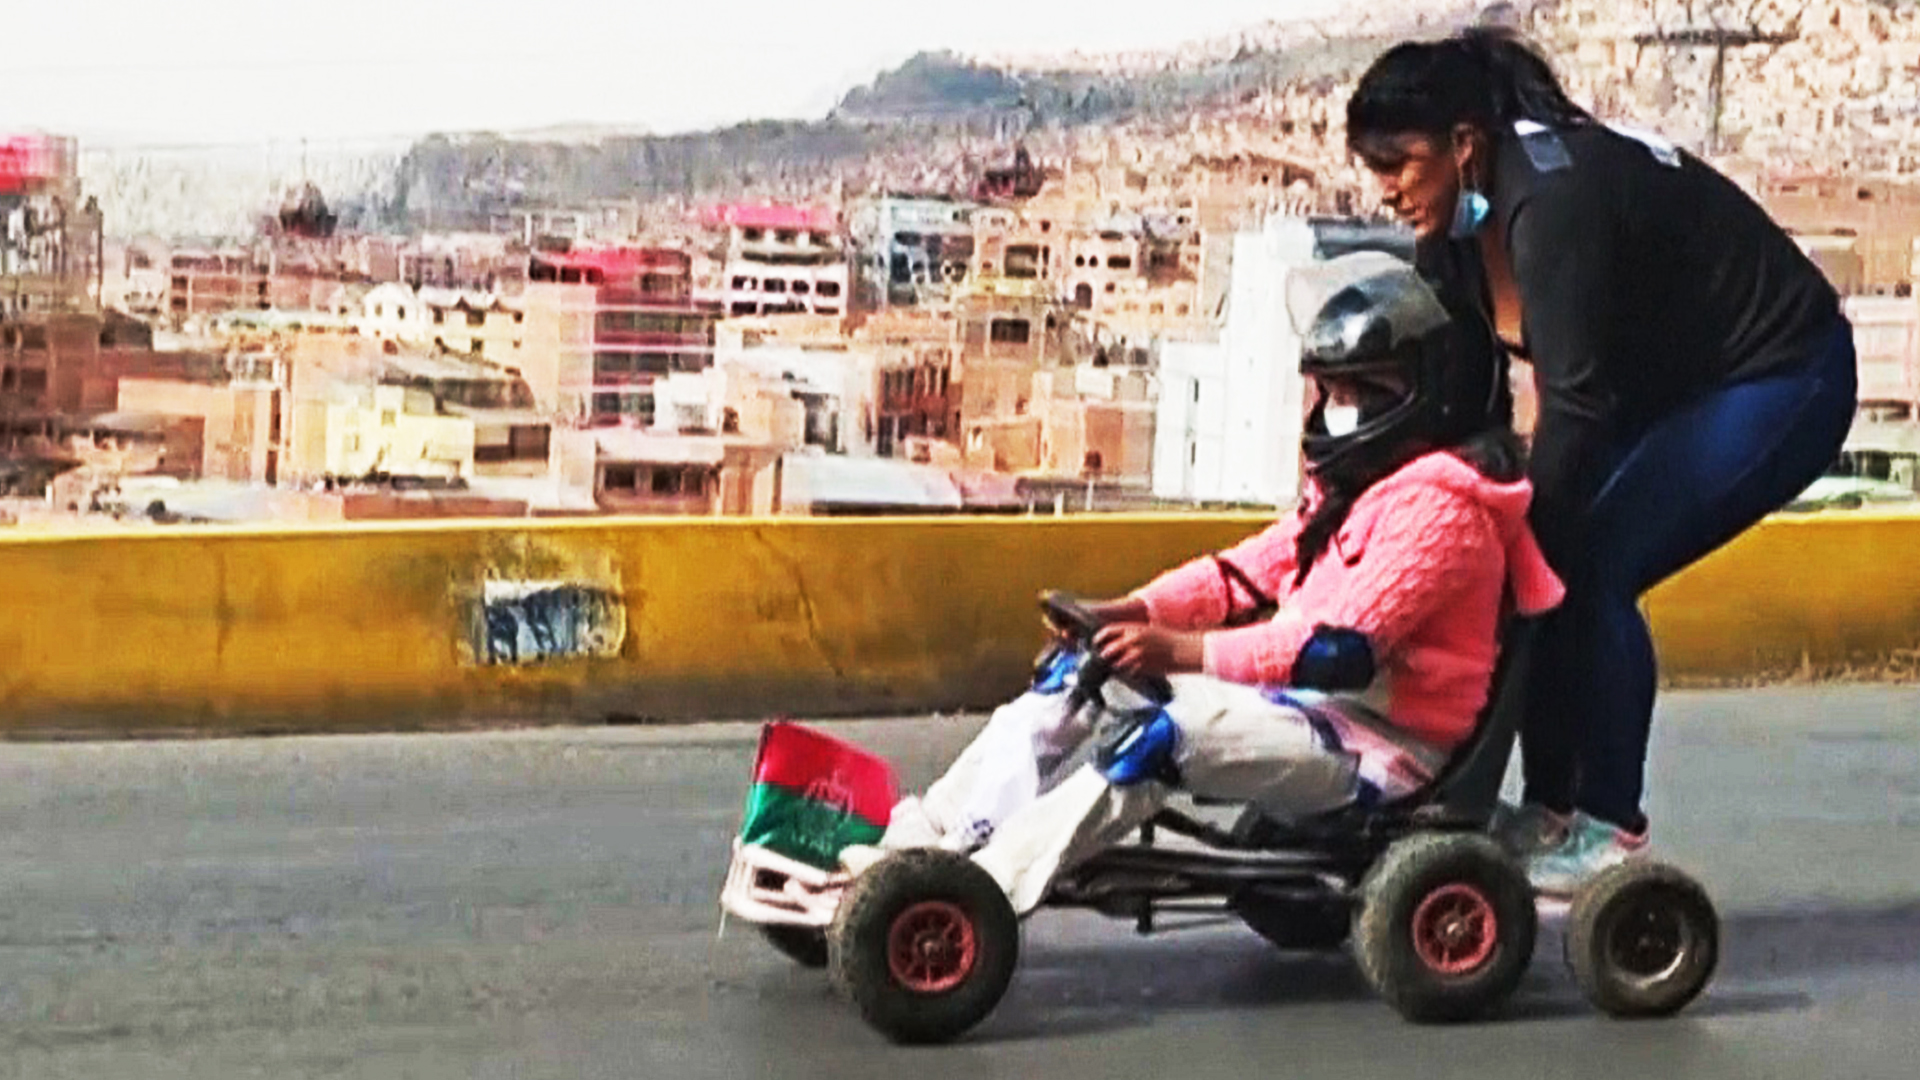 Как проходят гонки на самодельных картах в высокогорном Ла-Пасе